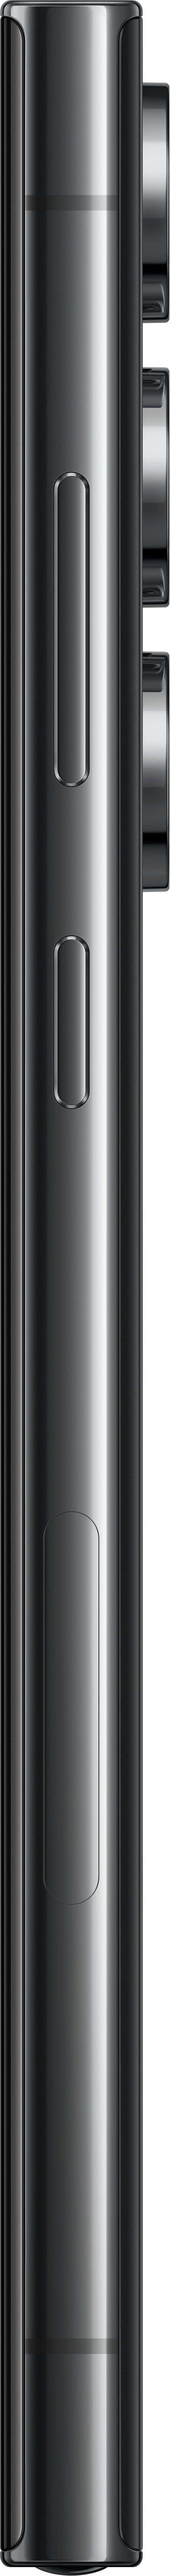 Samsung - Galaxy S23 Ultra 256GB - Phantom Black (Verizon)_7